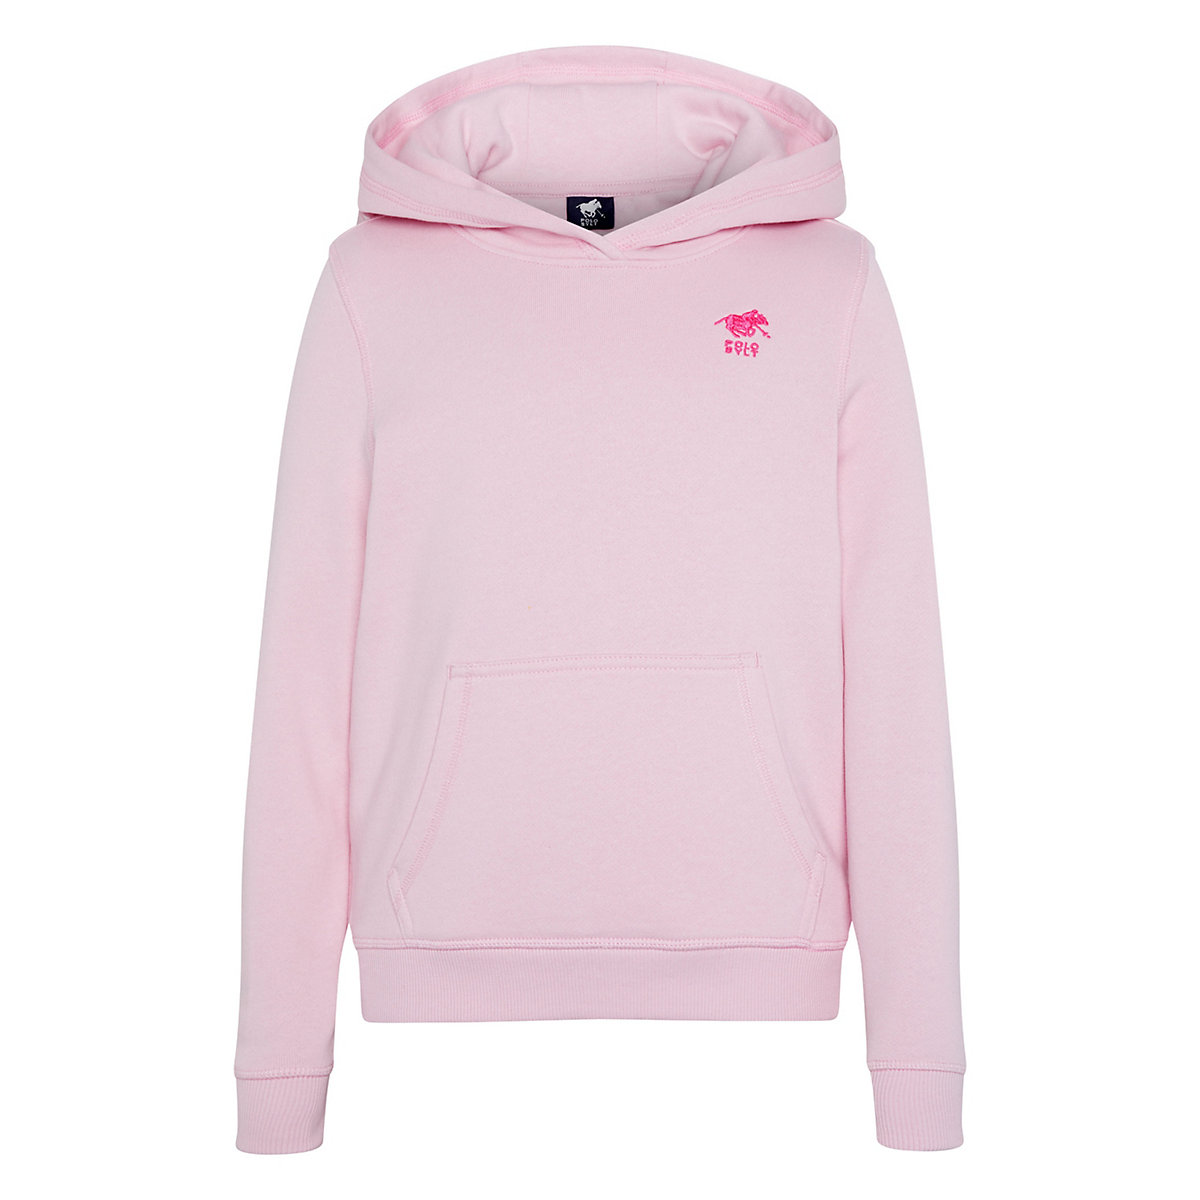 POLO SYLT Kapuzensweatshirt mit kleinem Logodruck Sweatshirts für Mädchen rosa